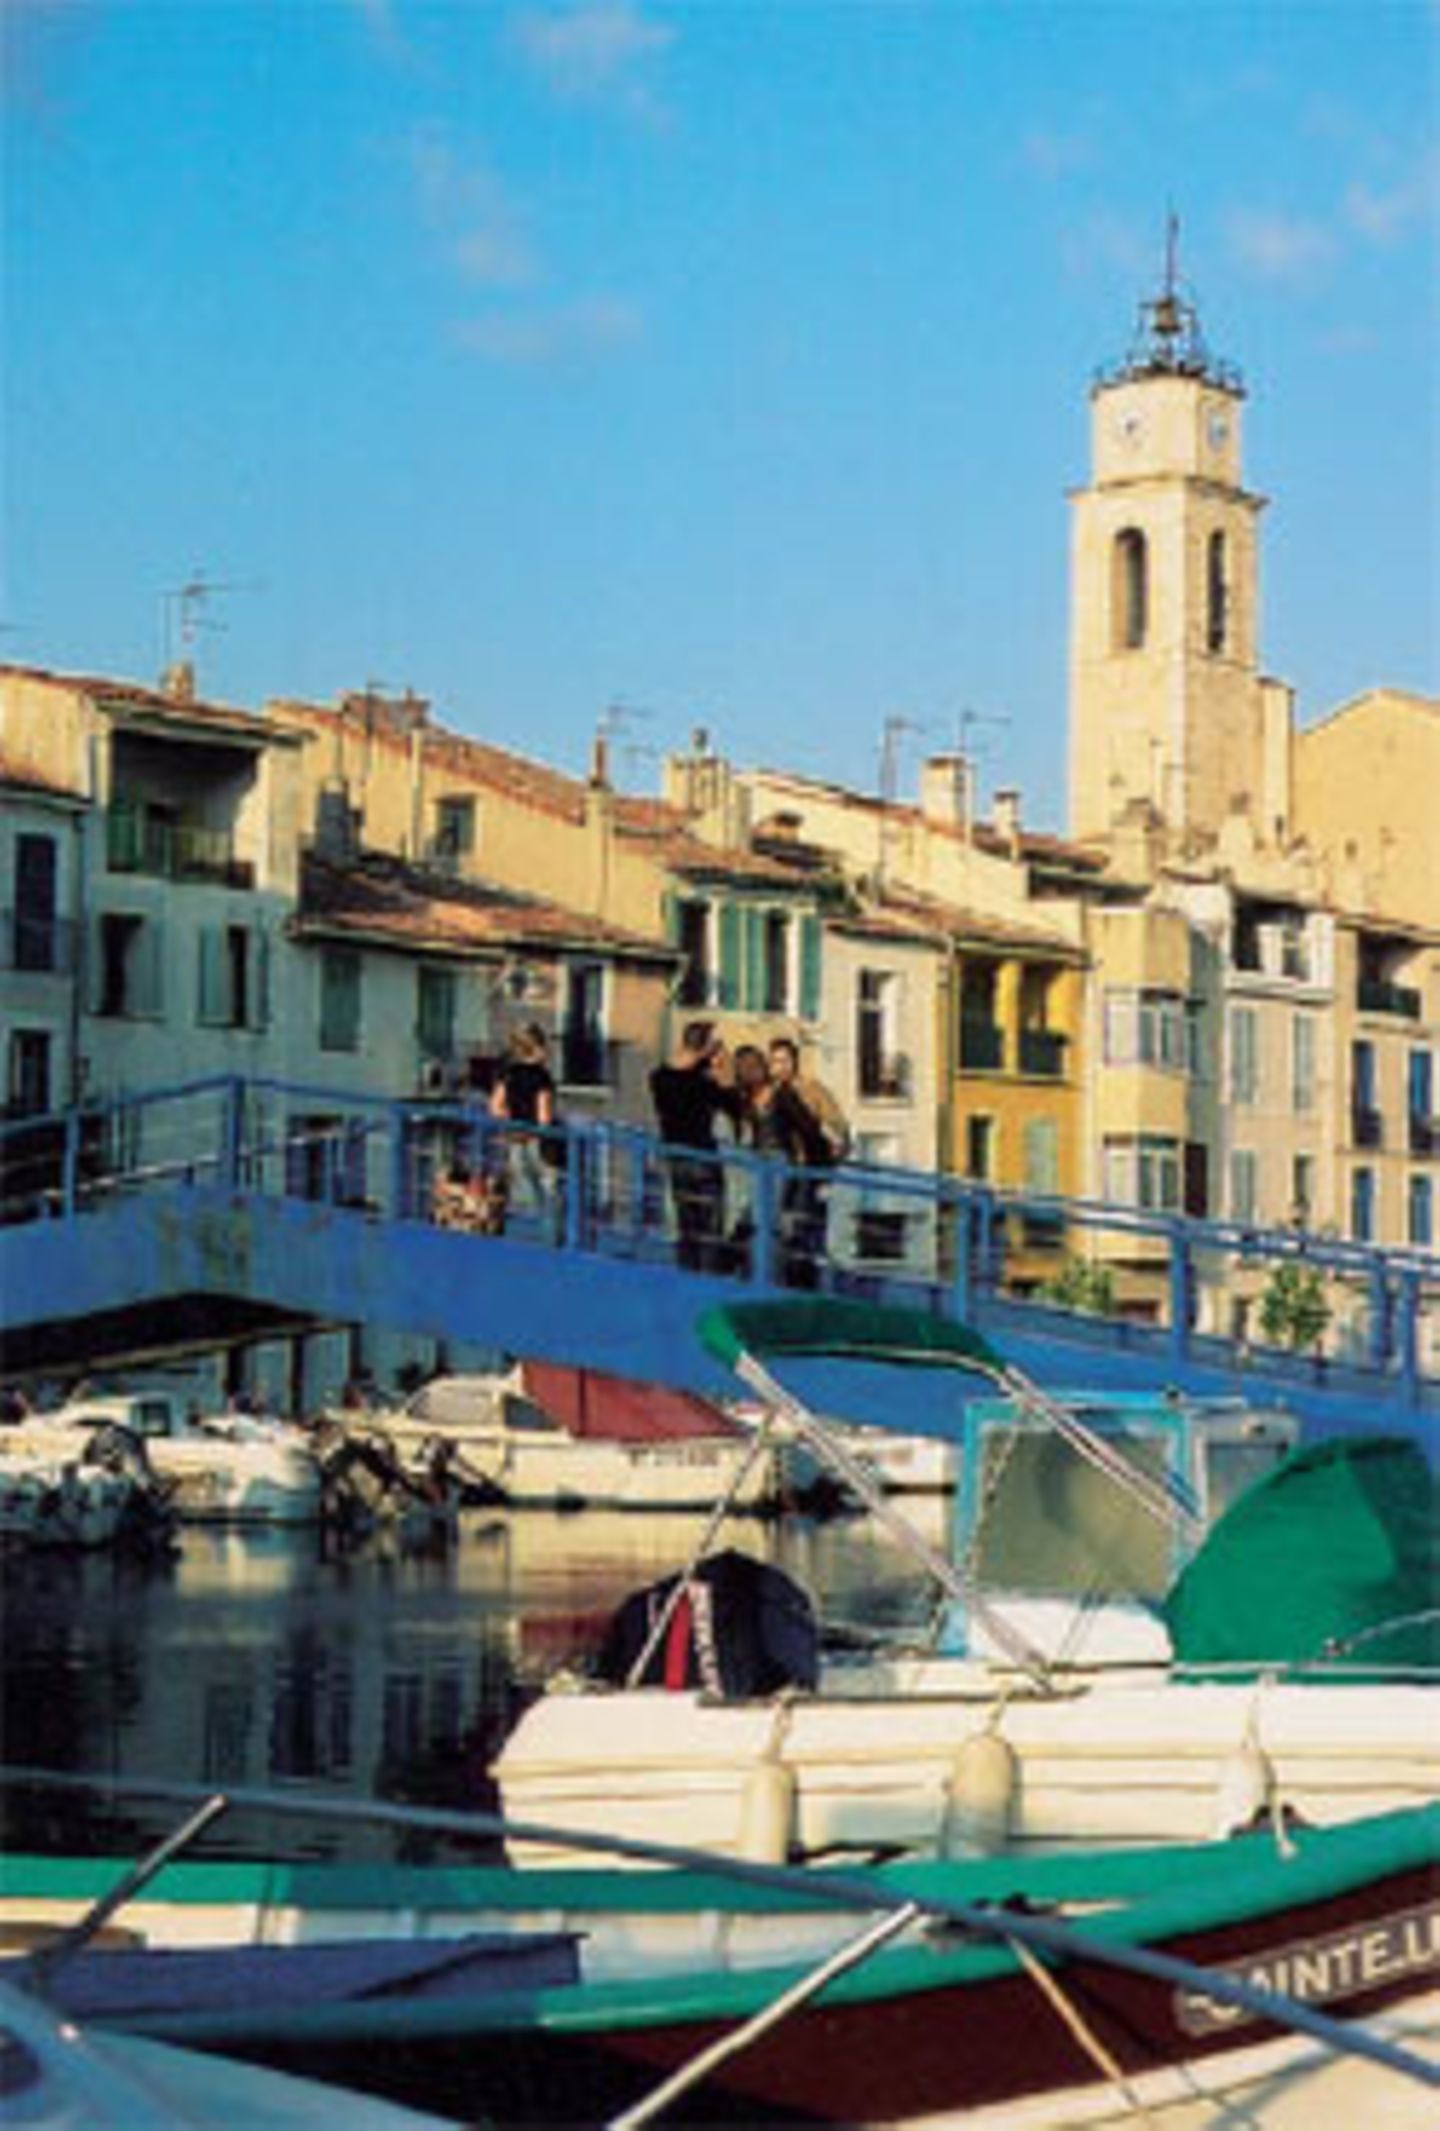 Venedig der Provence - Warum die kleine Stadt Martigues so genannt wird, muss nicht näher erklärt werden.